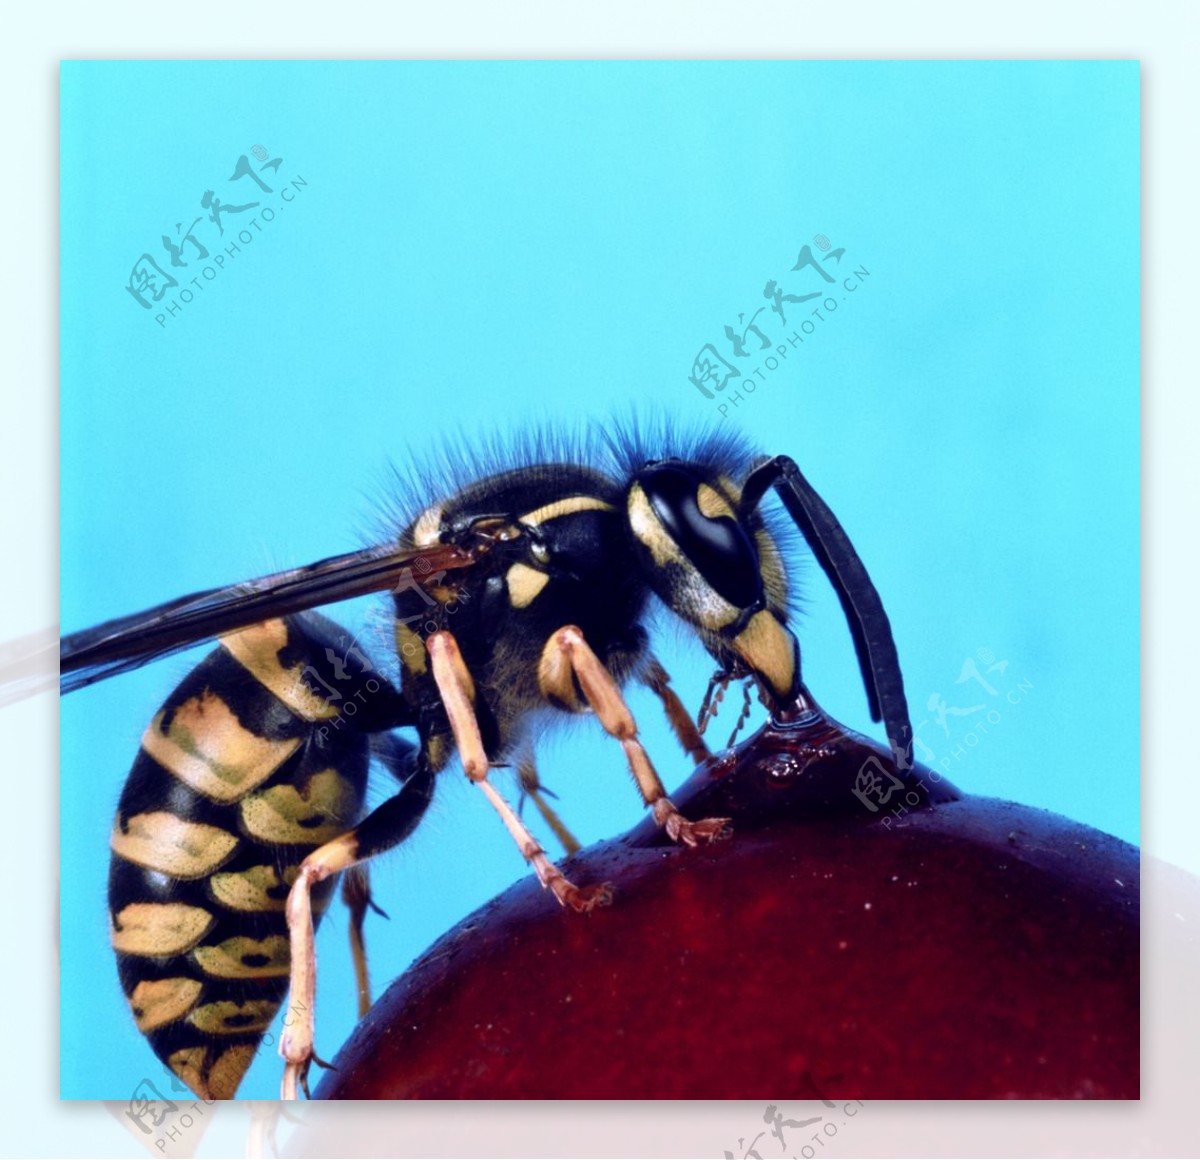 蜜蜂和蓝色蜂巢 库存照片. 图片 包括有 白兰地酒, 热化, 农场, 卧室, 飞行, 背包, 设计, 敌意 - 215220608